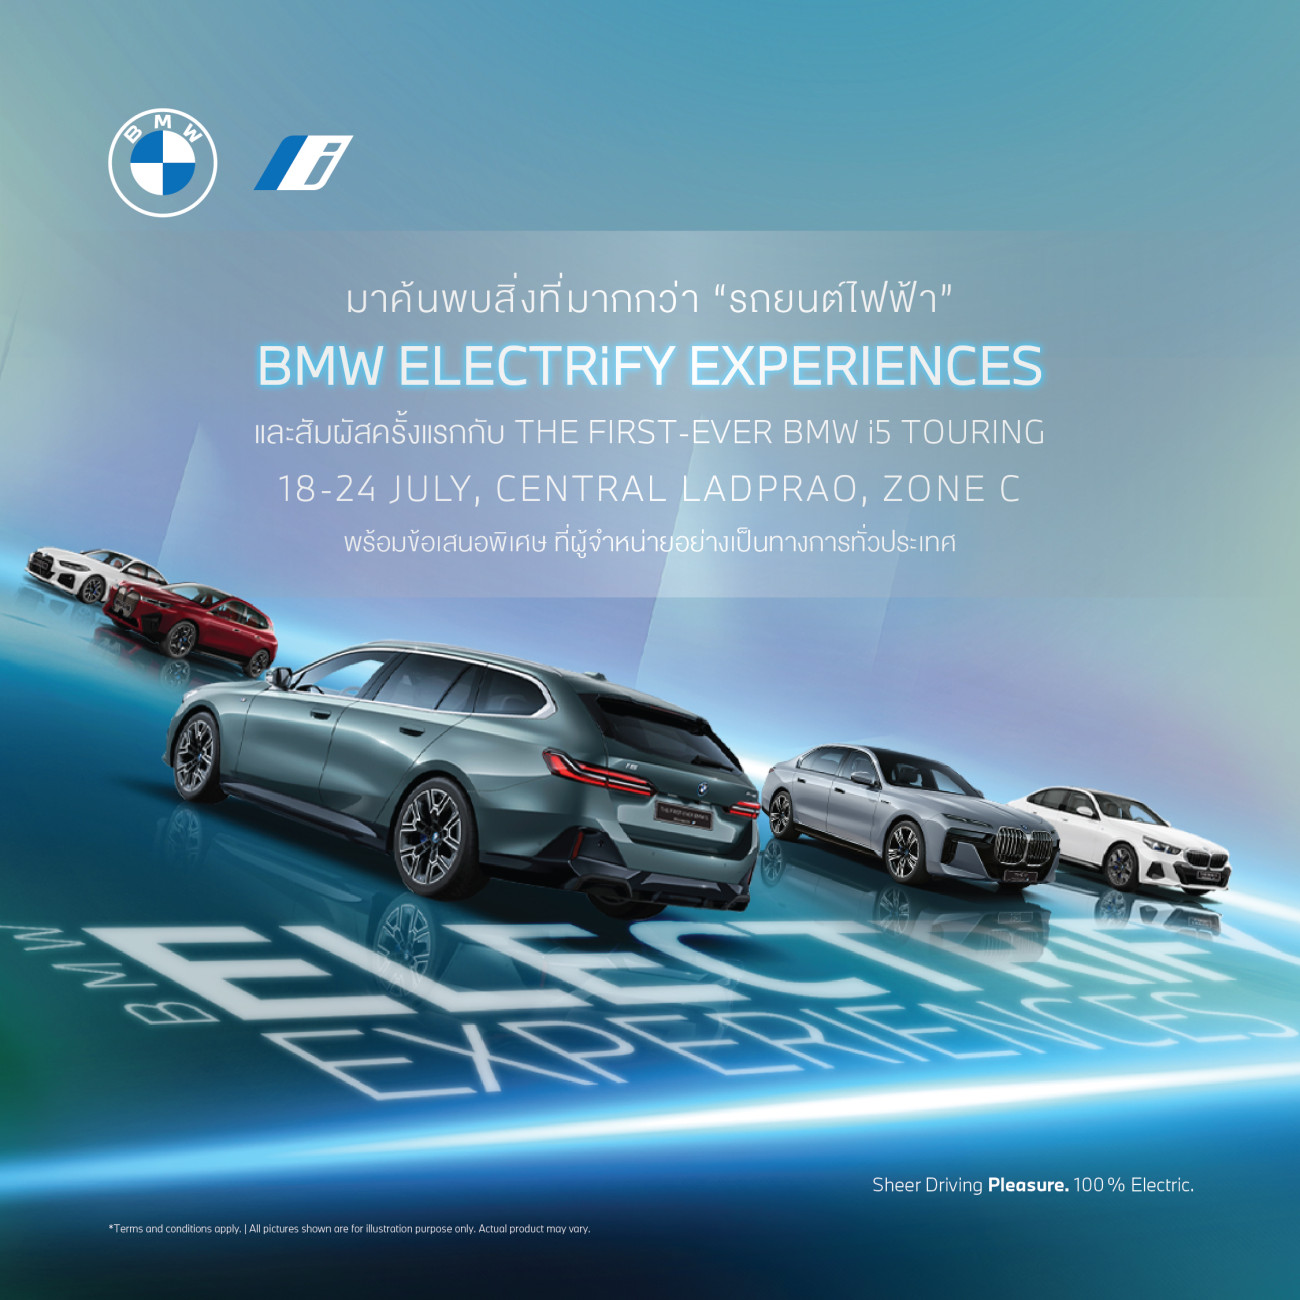 บีเอ็มดับเบิลยู ประเทศไทย ยกทัพยนตรกรรมไฟฟ้าสู่งาน BMW ELECTRiFY EXPERIENCES พร้อมเผยโฉมบีเอ็มดับเบิลยู i5 eDrive40 M Sport Touring เป็นครั้งแรก